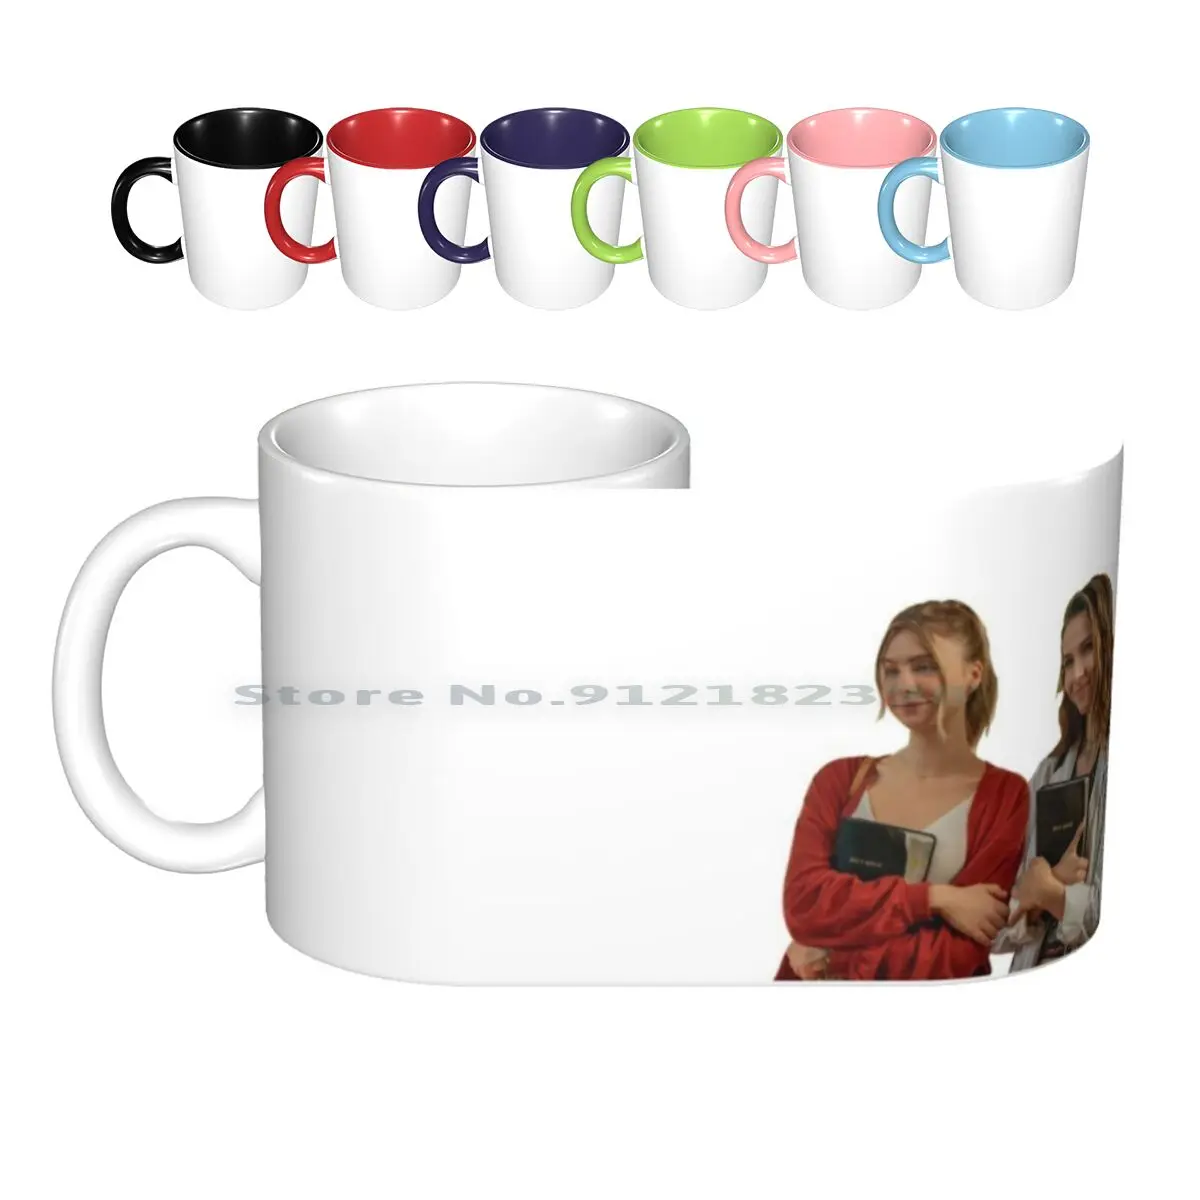 

Blair Sterling In Teenage Bounty Hunters Netflix Series Ceramic Mugs Coffee Cups Milk Tea Mug Netflix Netflix Series Teenage